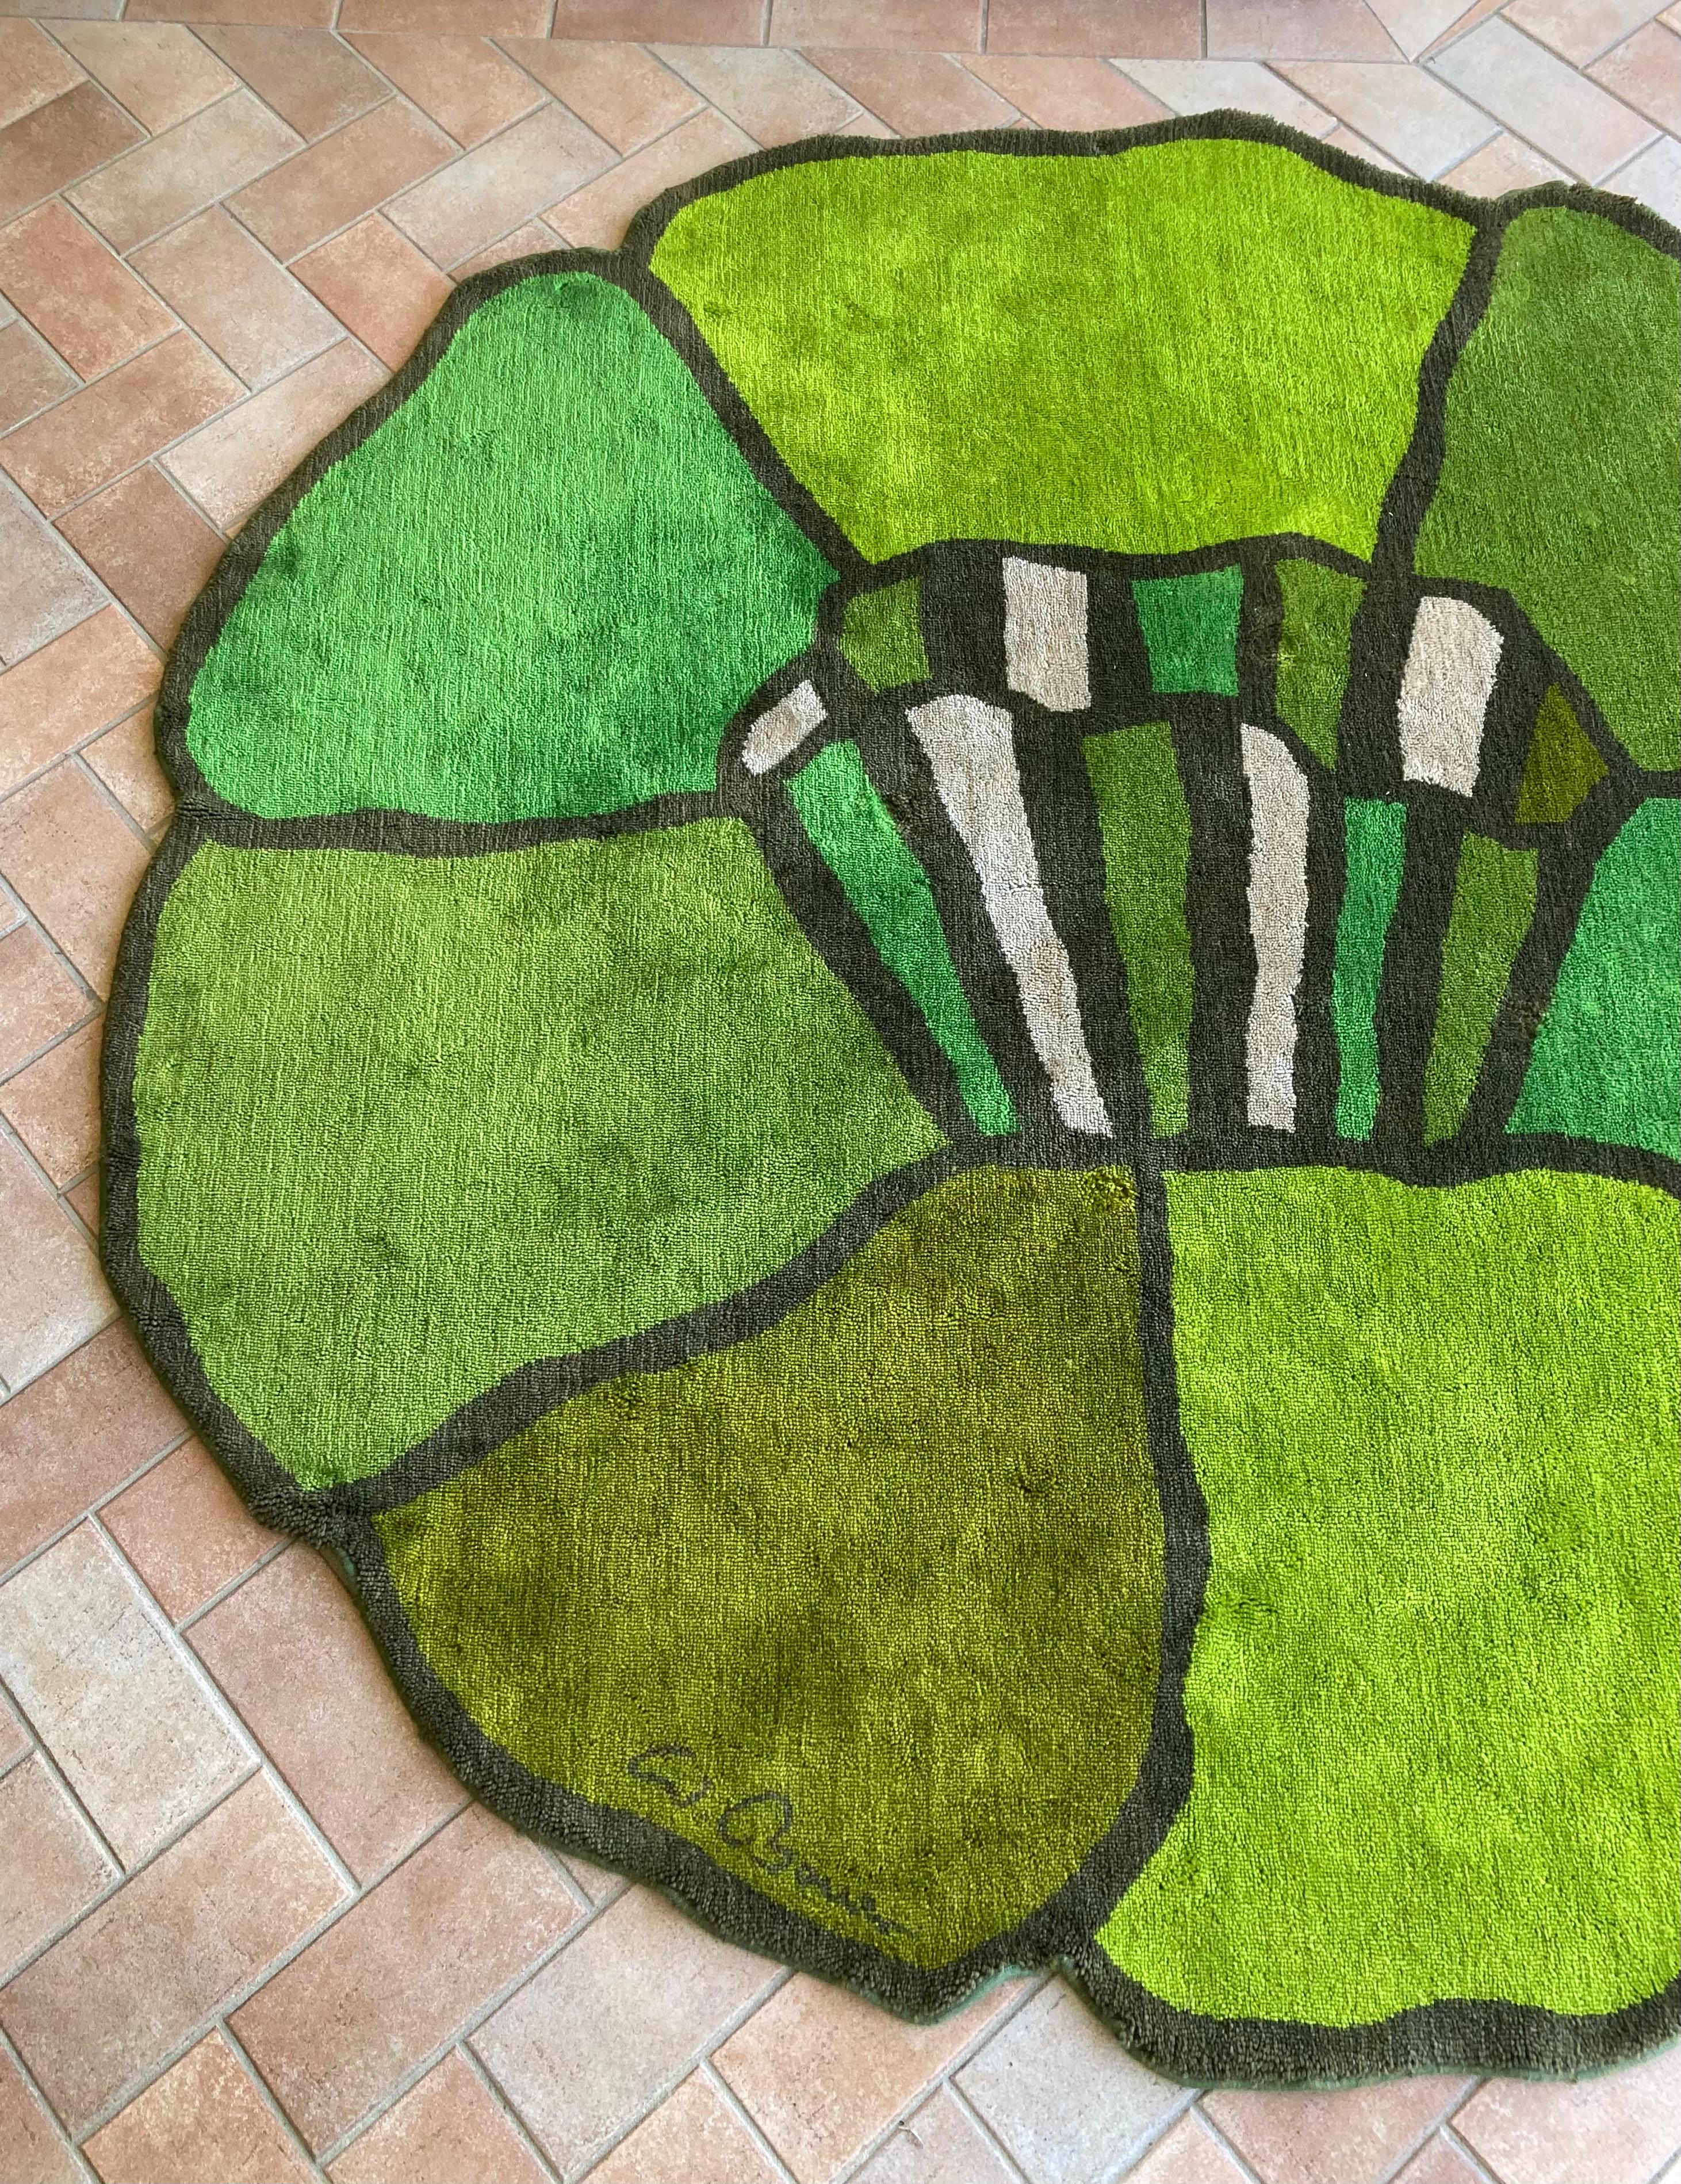 Dieser runde Vintage-Teppich in Form einer Blume wurde aus reiner Wolle gewebt. Die Schönheit dieses dekorativen Elements liegt in der besonderen Form und in den verschiedenen Grüntönen, die in harmonischer Weise verwendet werden. 

Durchmesser 240